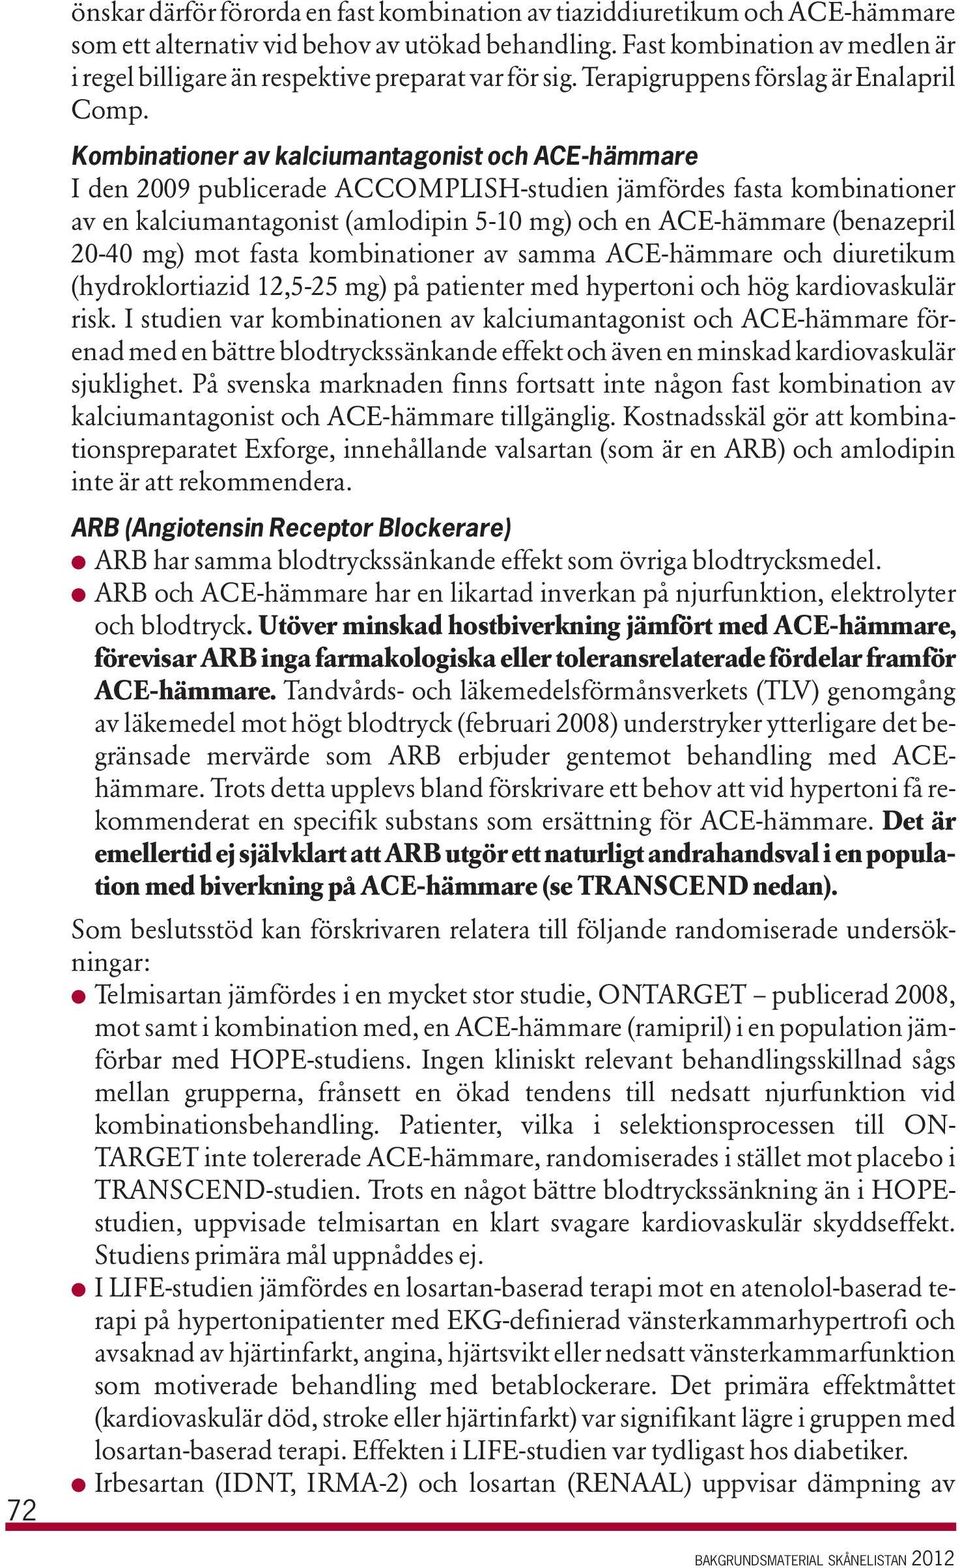 Kombinationer av kalciumantagonist och ACE-hämmare I den 2009 publicerade ACCOMPLISH-studien jämfördes fasta kombinationer av en kalciumantagonist (amlodipin 5-10 mg) och en ACE-hämmare (benazepril